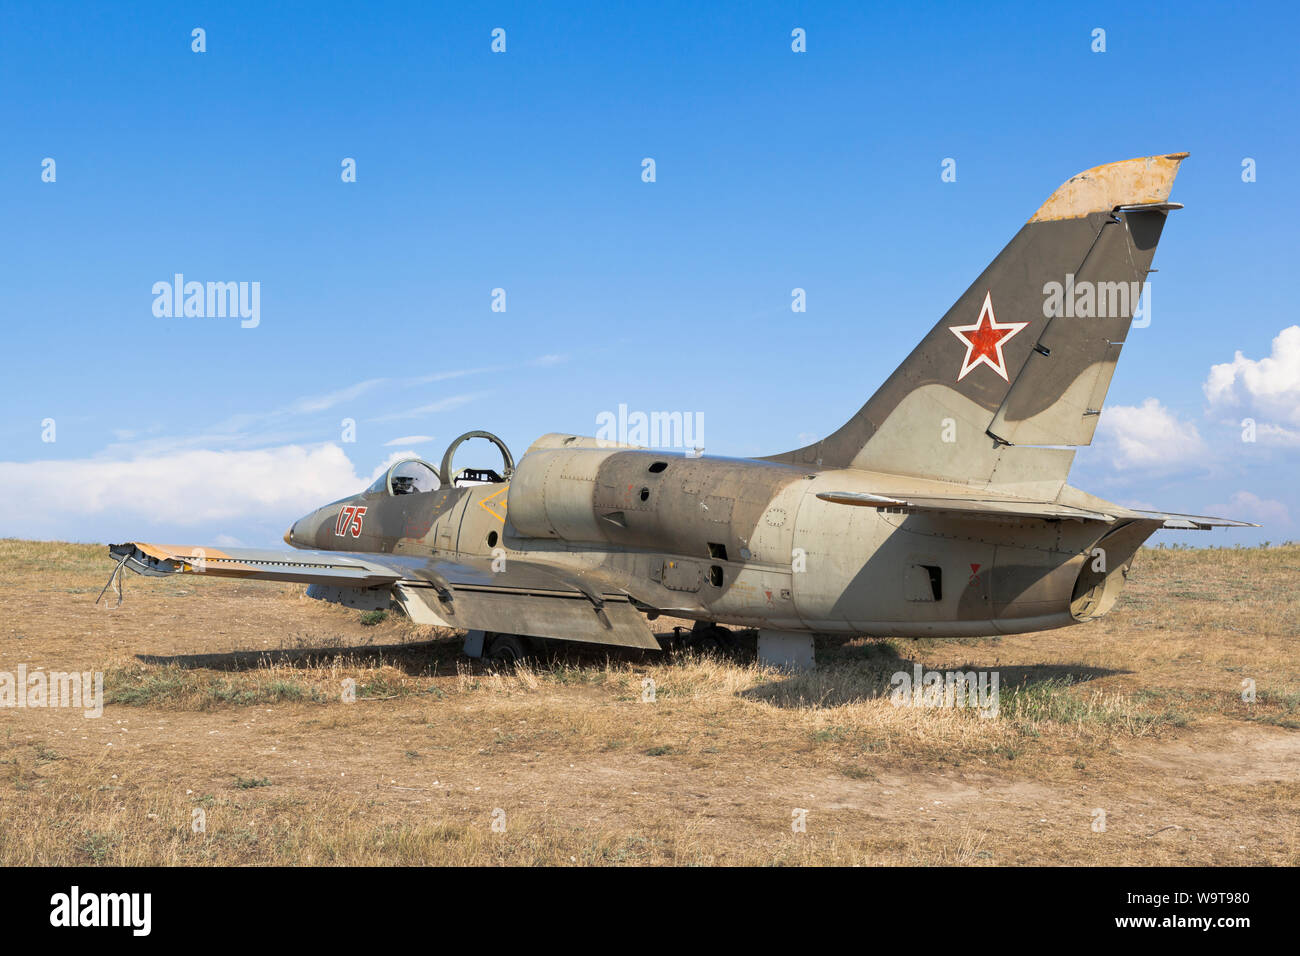 Taman, Temryuk district, région de Krasnodar, Russie - le 17 juillet 2019 : les avions militaires Aero L-39 Albatros sur Lysaya Gora dans le village de Taman, Temryu Banque D'Images